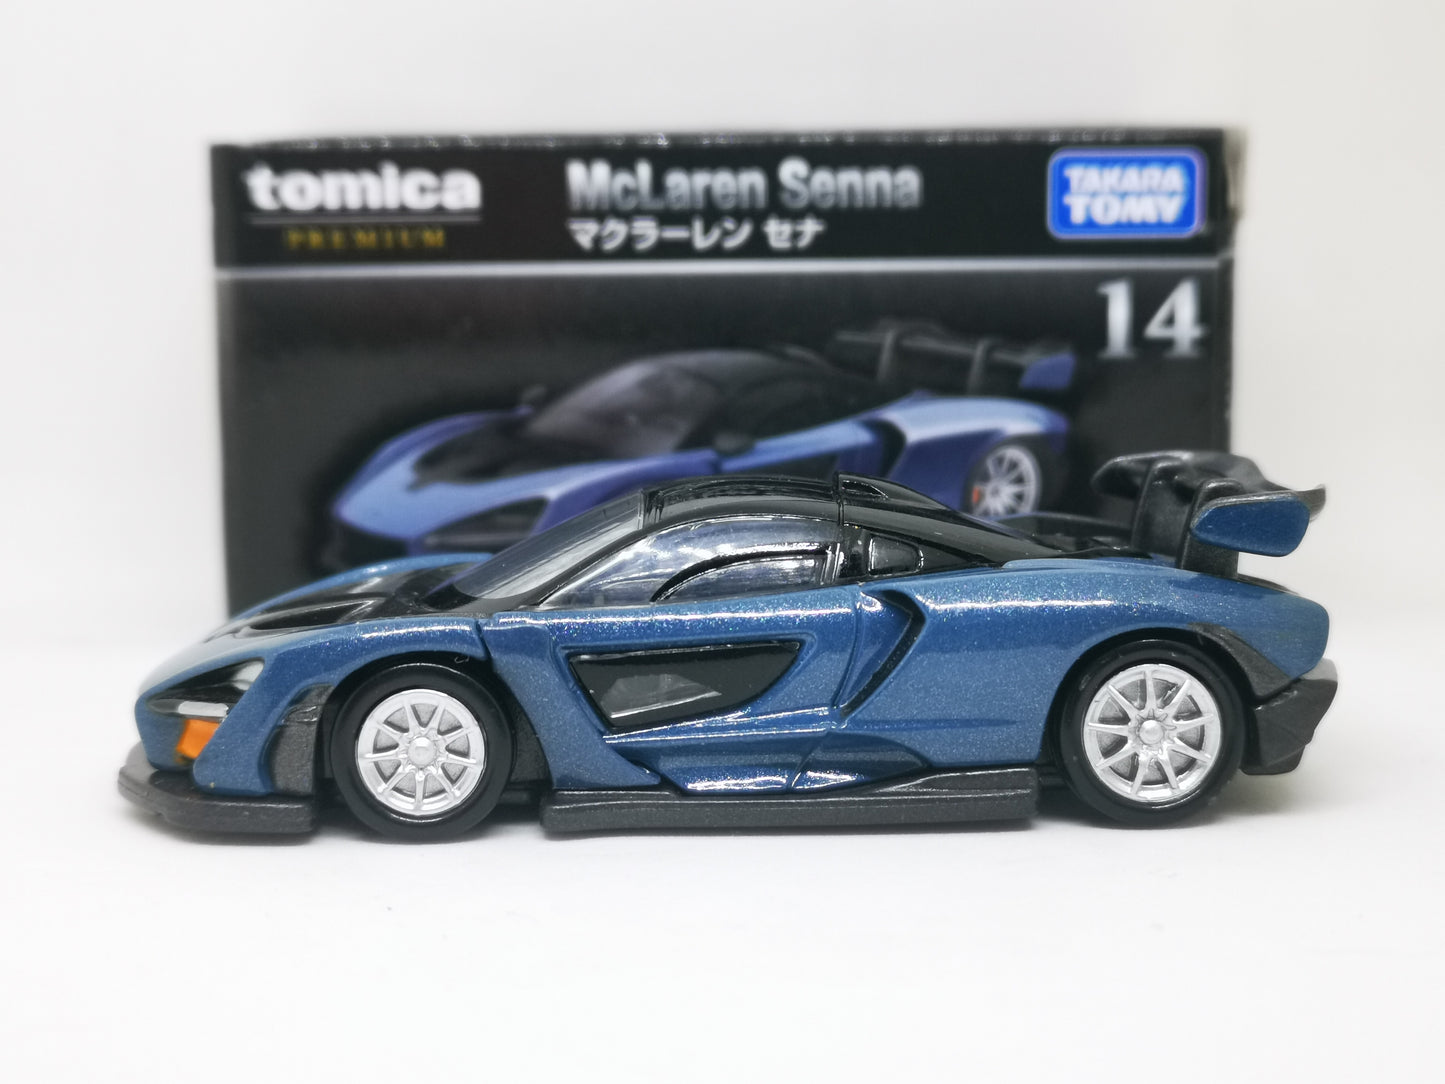 Tomica Premium 14 Mclaren Senna 1:62 SCALE